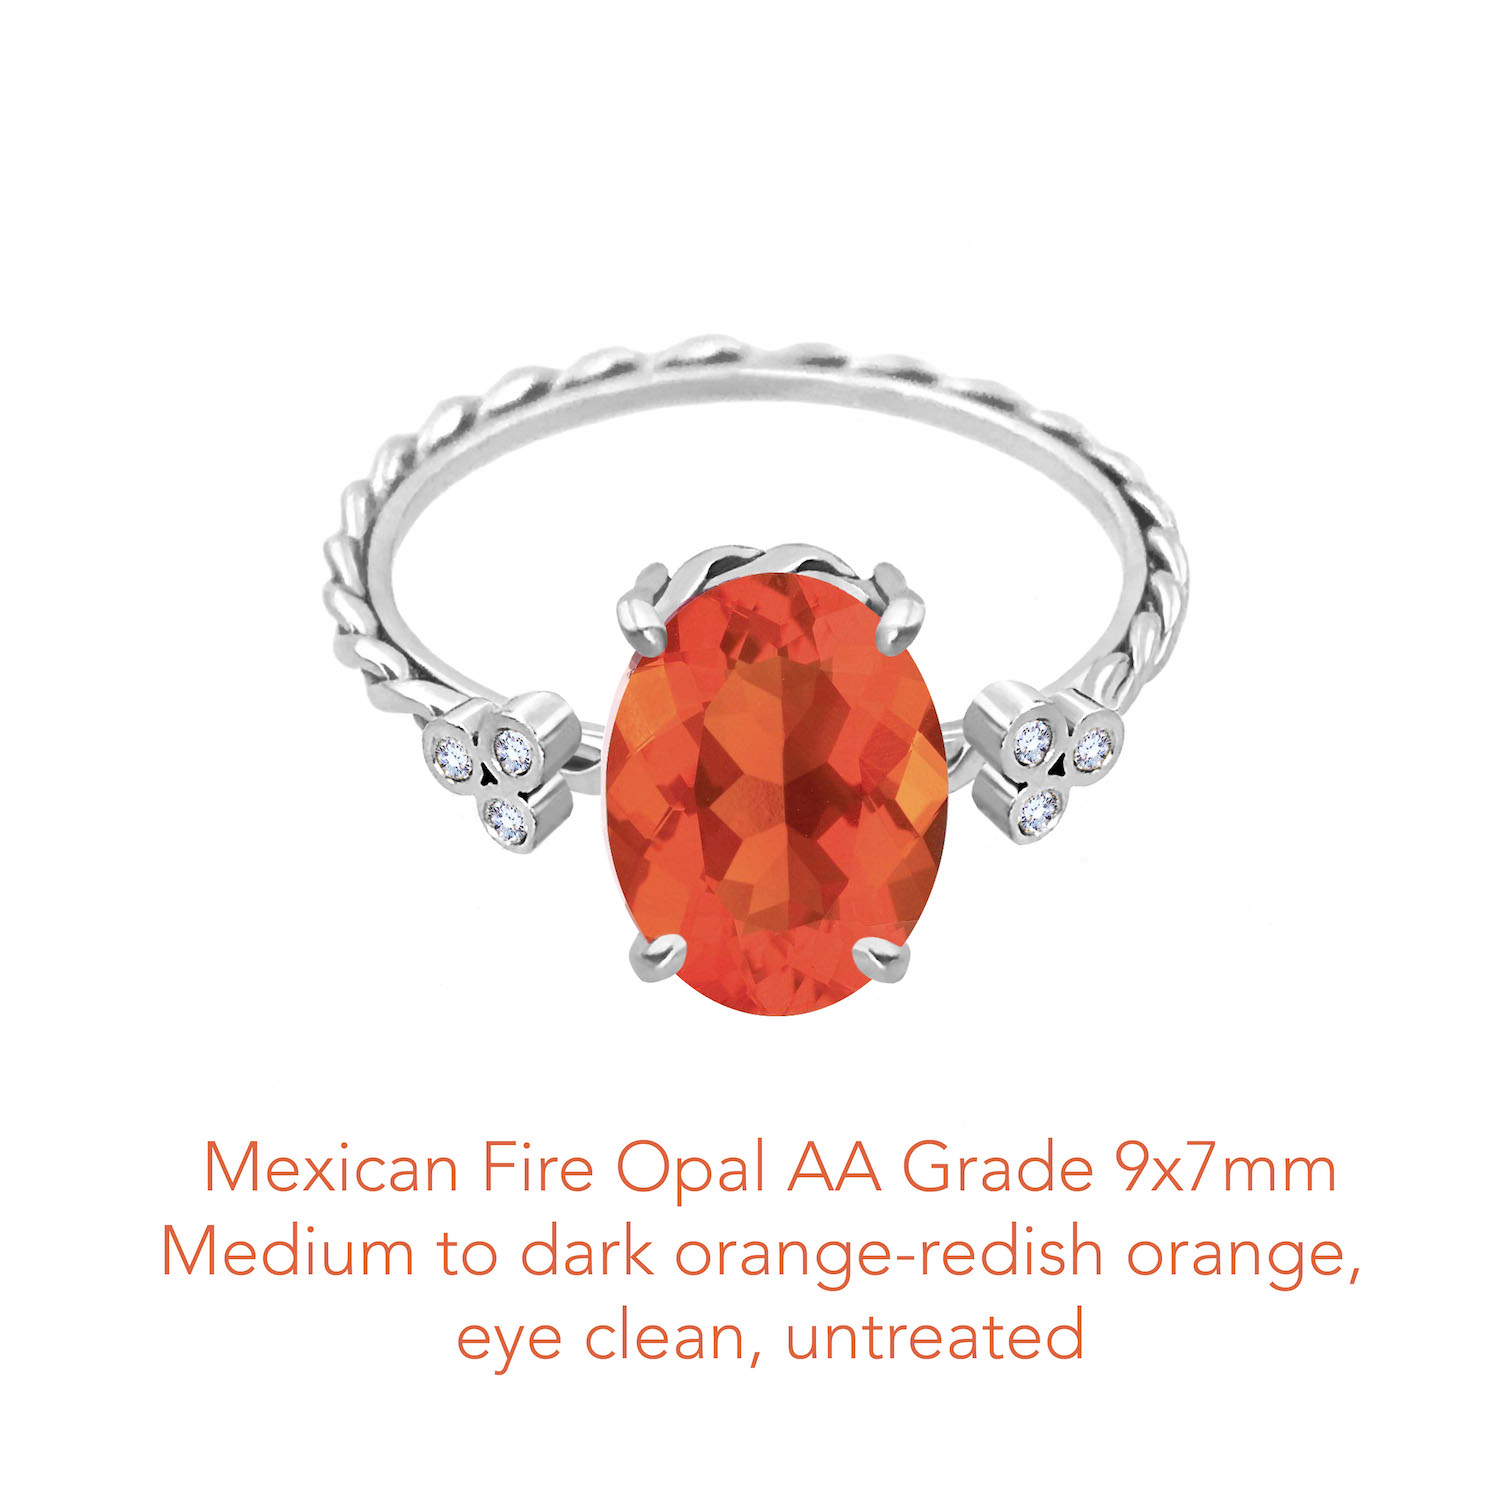 Opal Mexican fire AA 9x7 WG